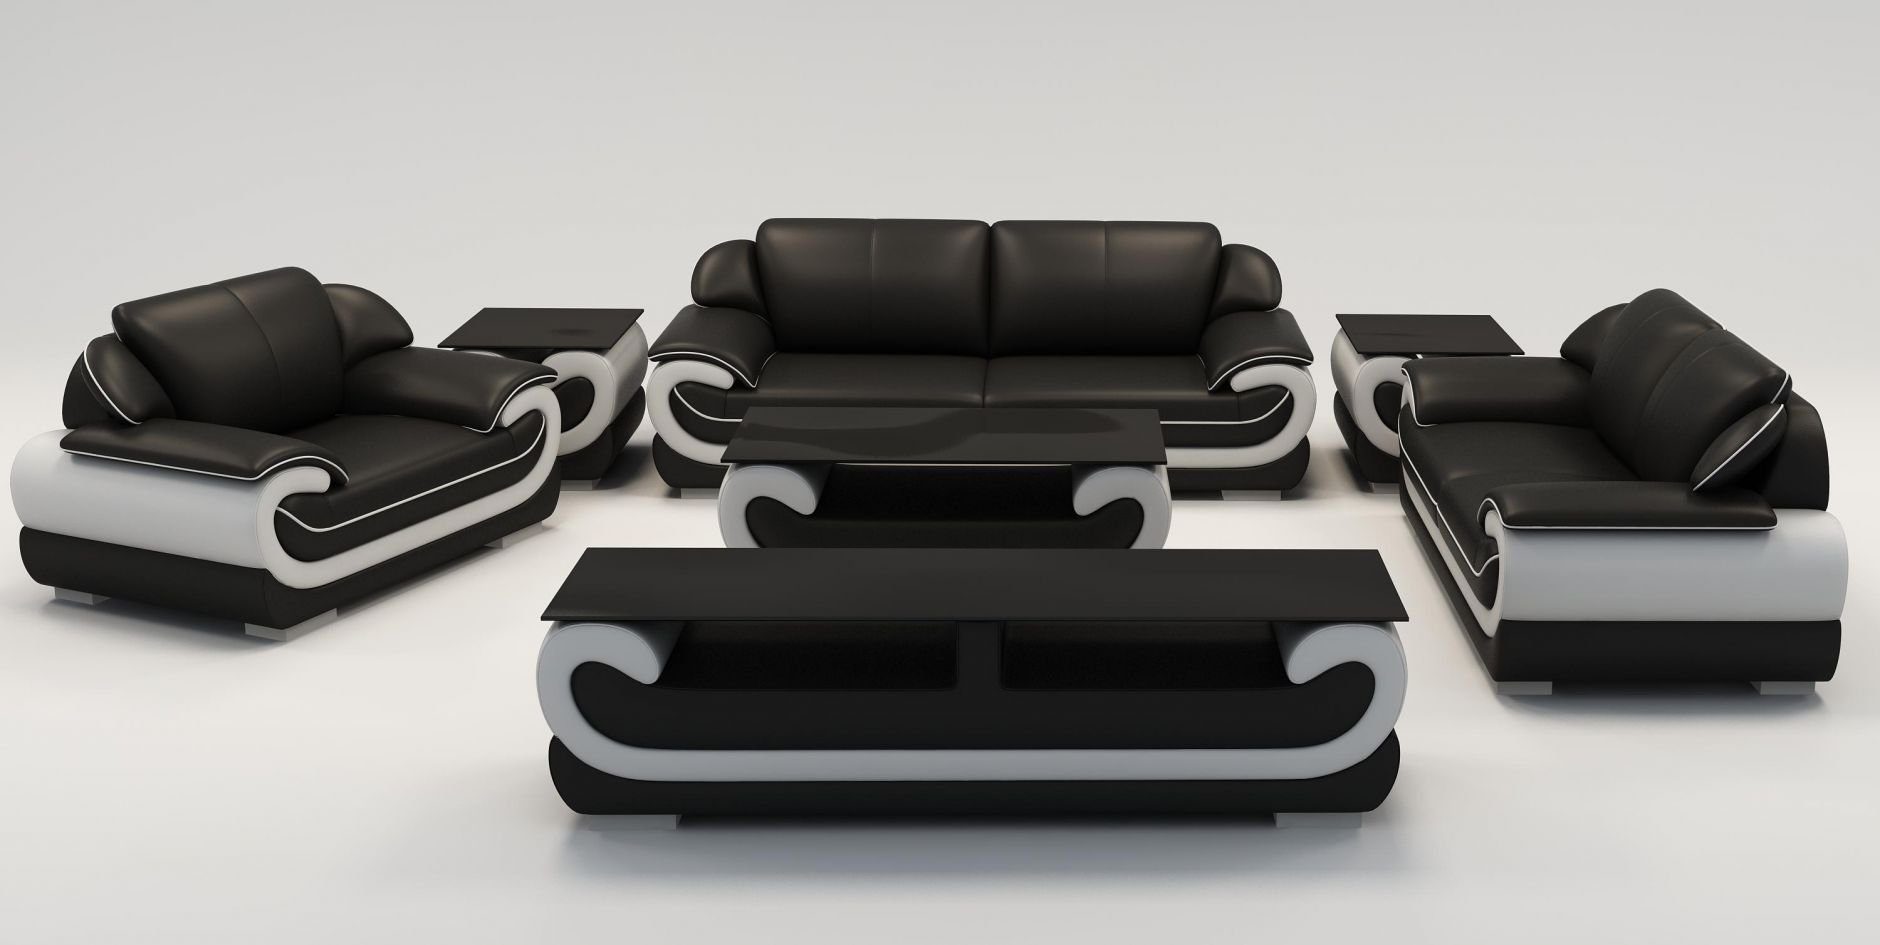 JVmoebel Wohnzimmer-Set Sofagarnitur 3+2+1 Sitzer 2x Beistelltisch Sideboard Hocker 7tlg.Set Schwarz/Grau